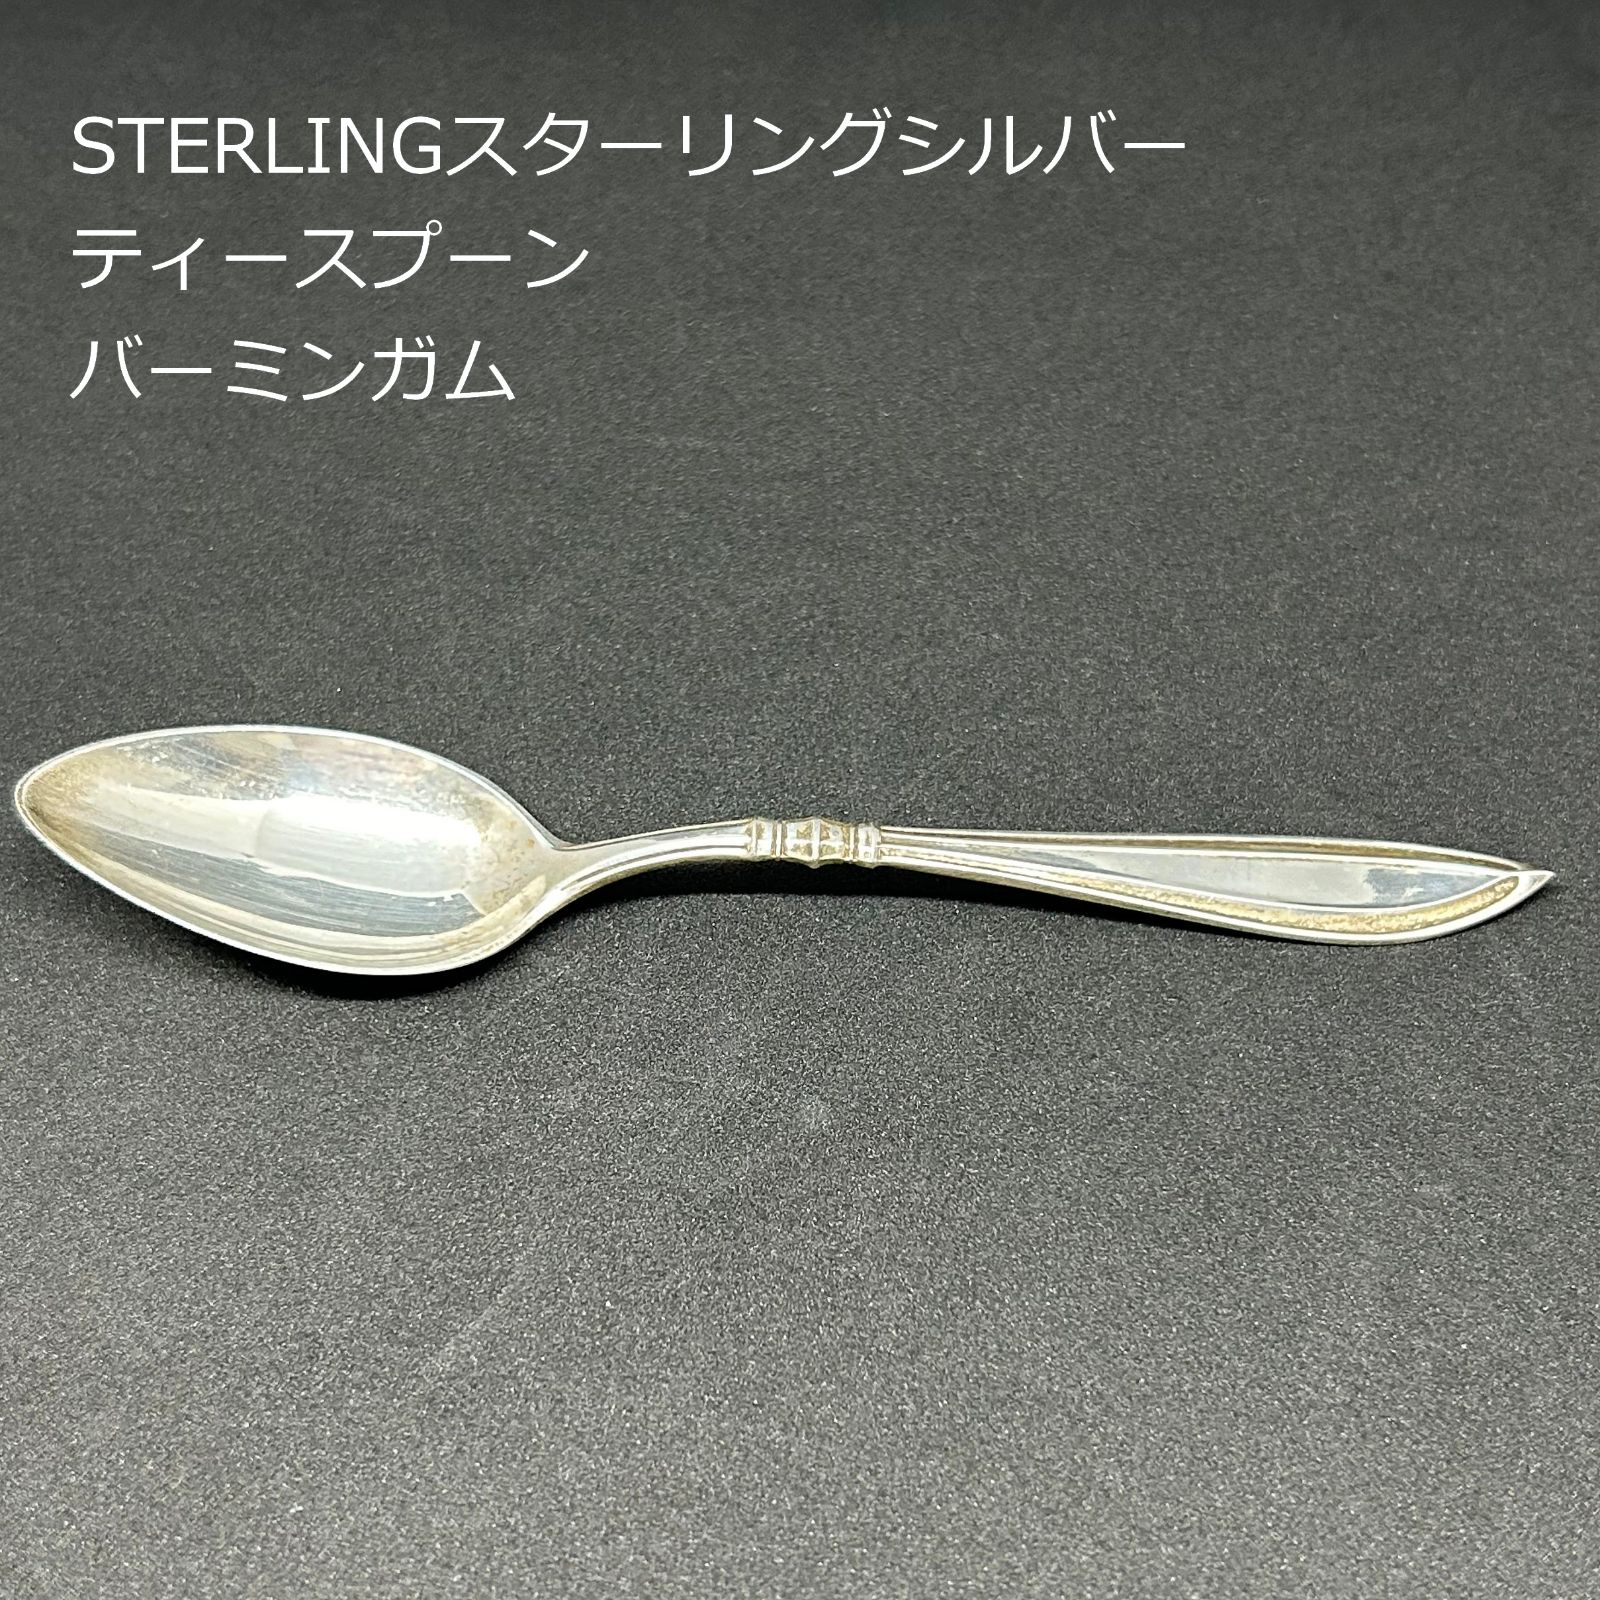 カトラリー(スプーン等)NHK刻印入り銀製スプーンとフォークセット　ヴィンテージ品